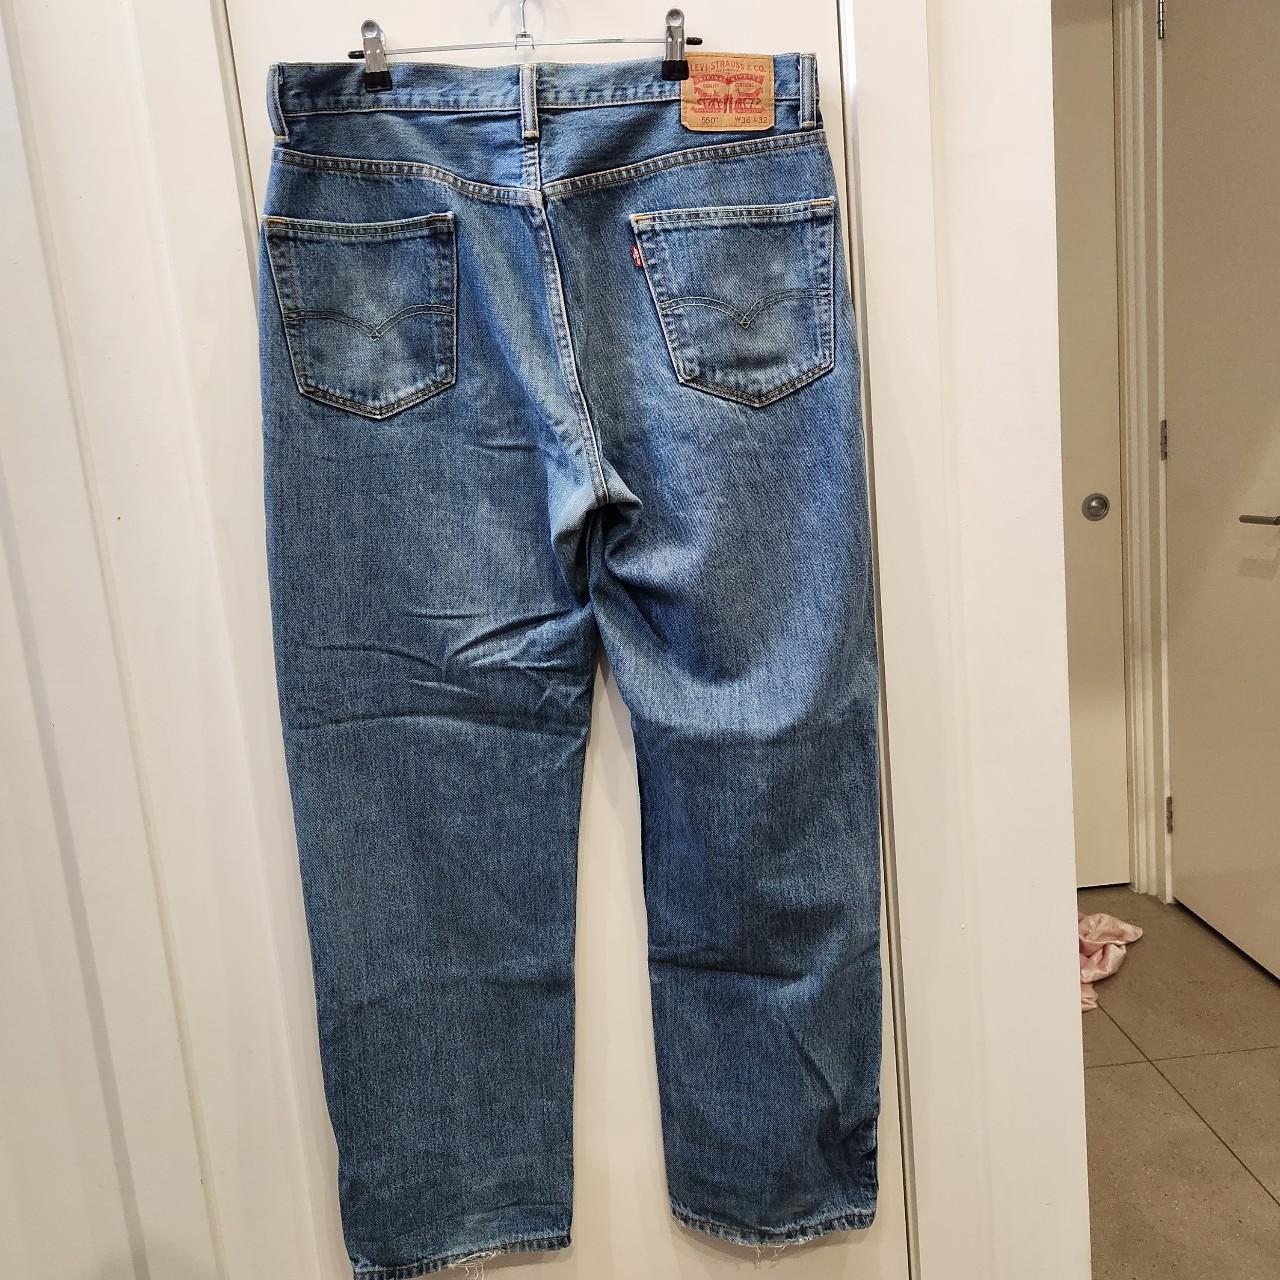 LEVIS blue 550 jeans. Vintage great condition. A... - Depop